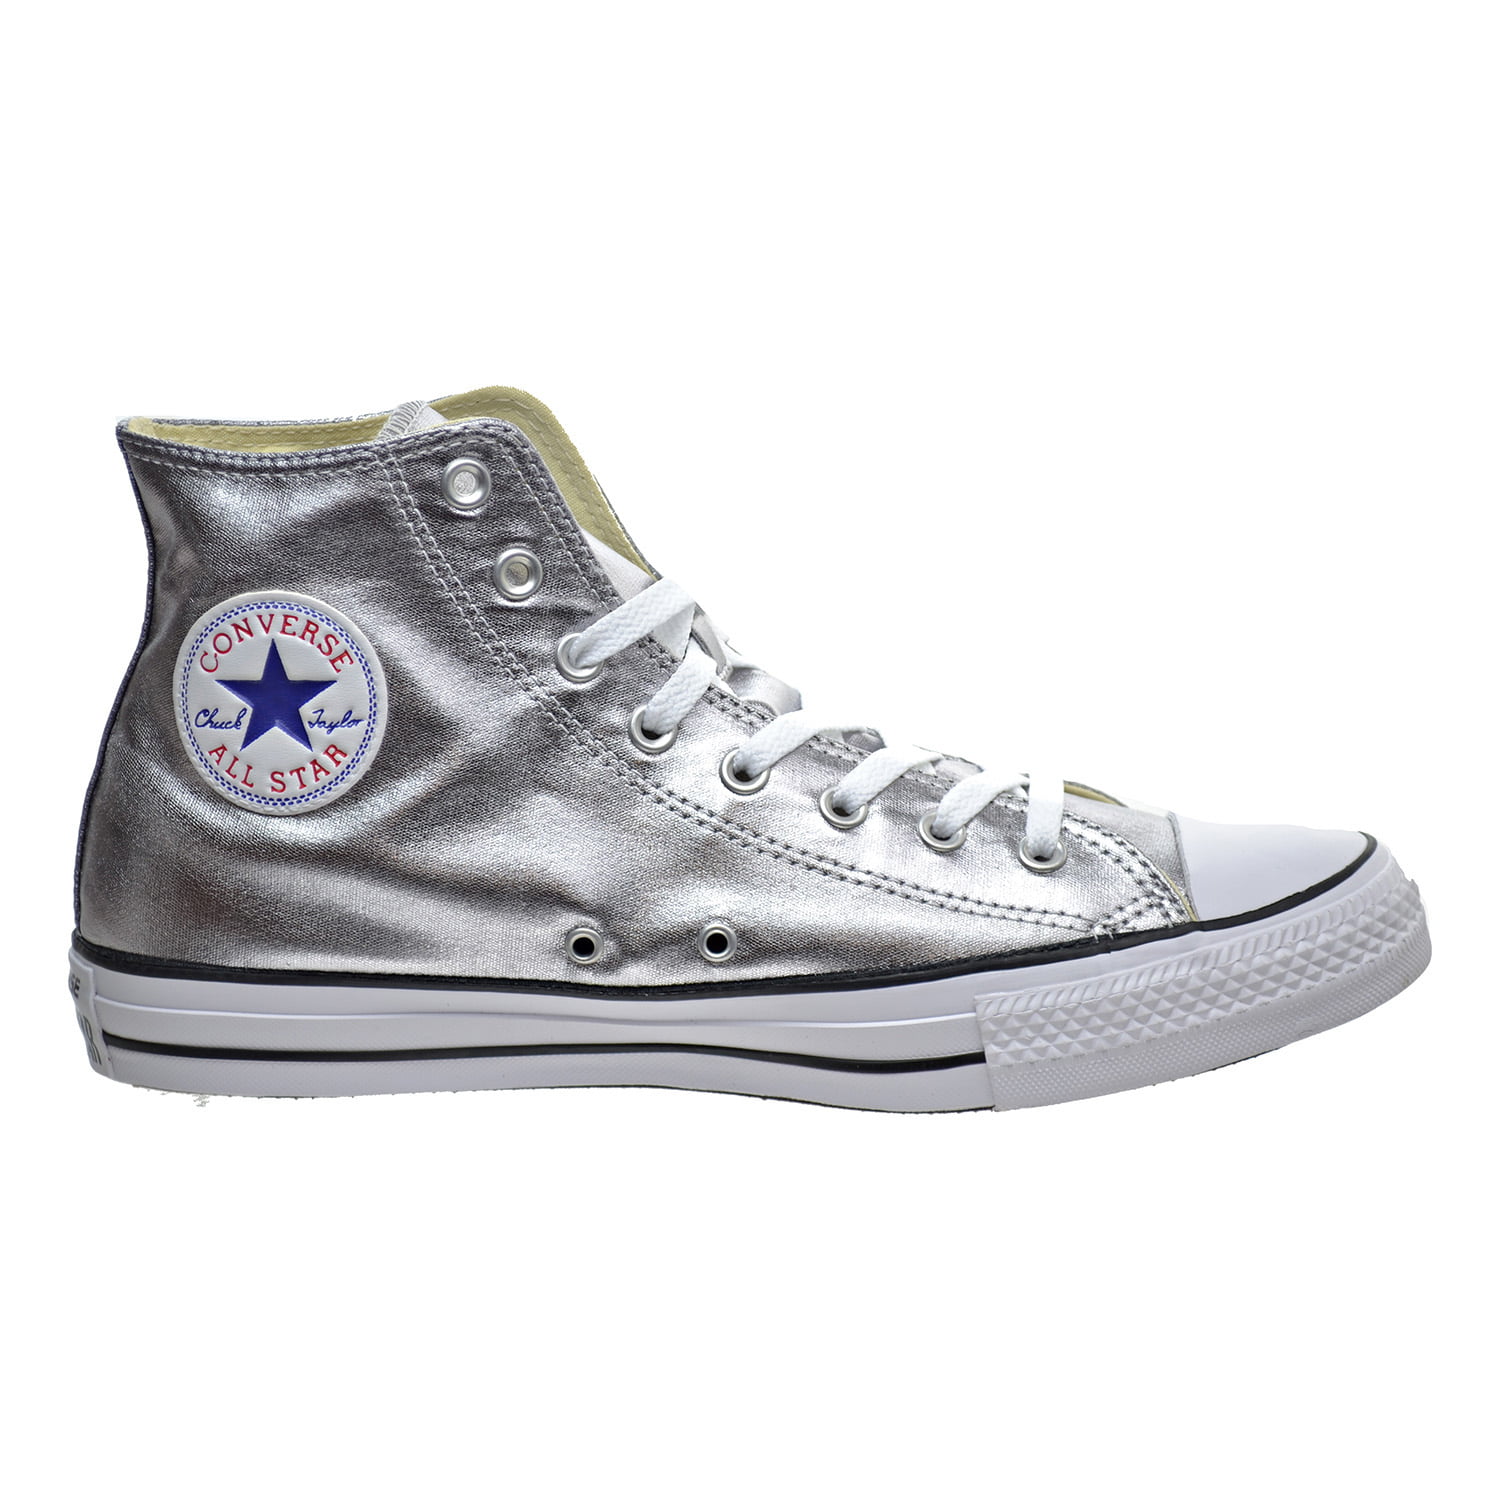 Nunca Reducción Pronunciar Converse Chuck Taylor All Star Metallic High Top Unisex Shoes Gun Metal/White  153177f - Walmart.com